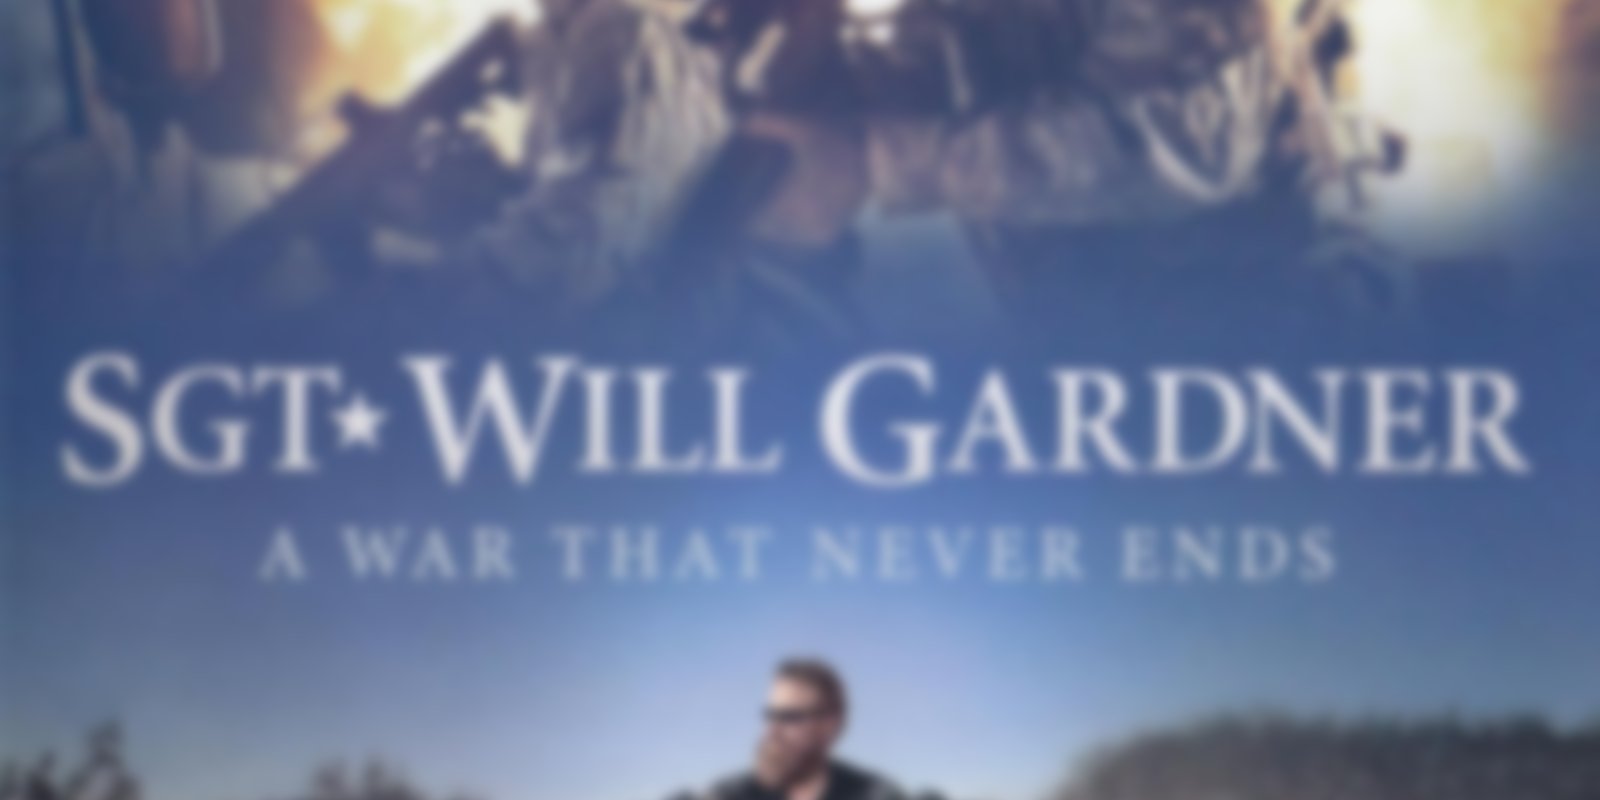 Sgt. Will Gardner